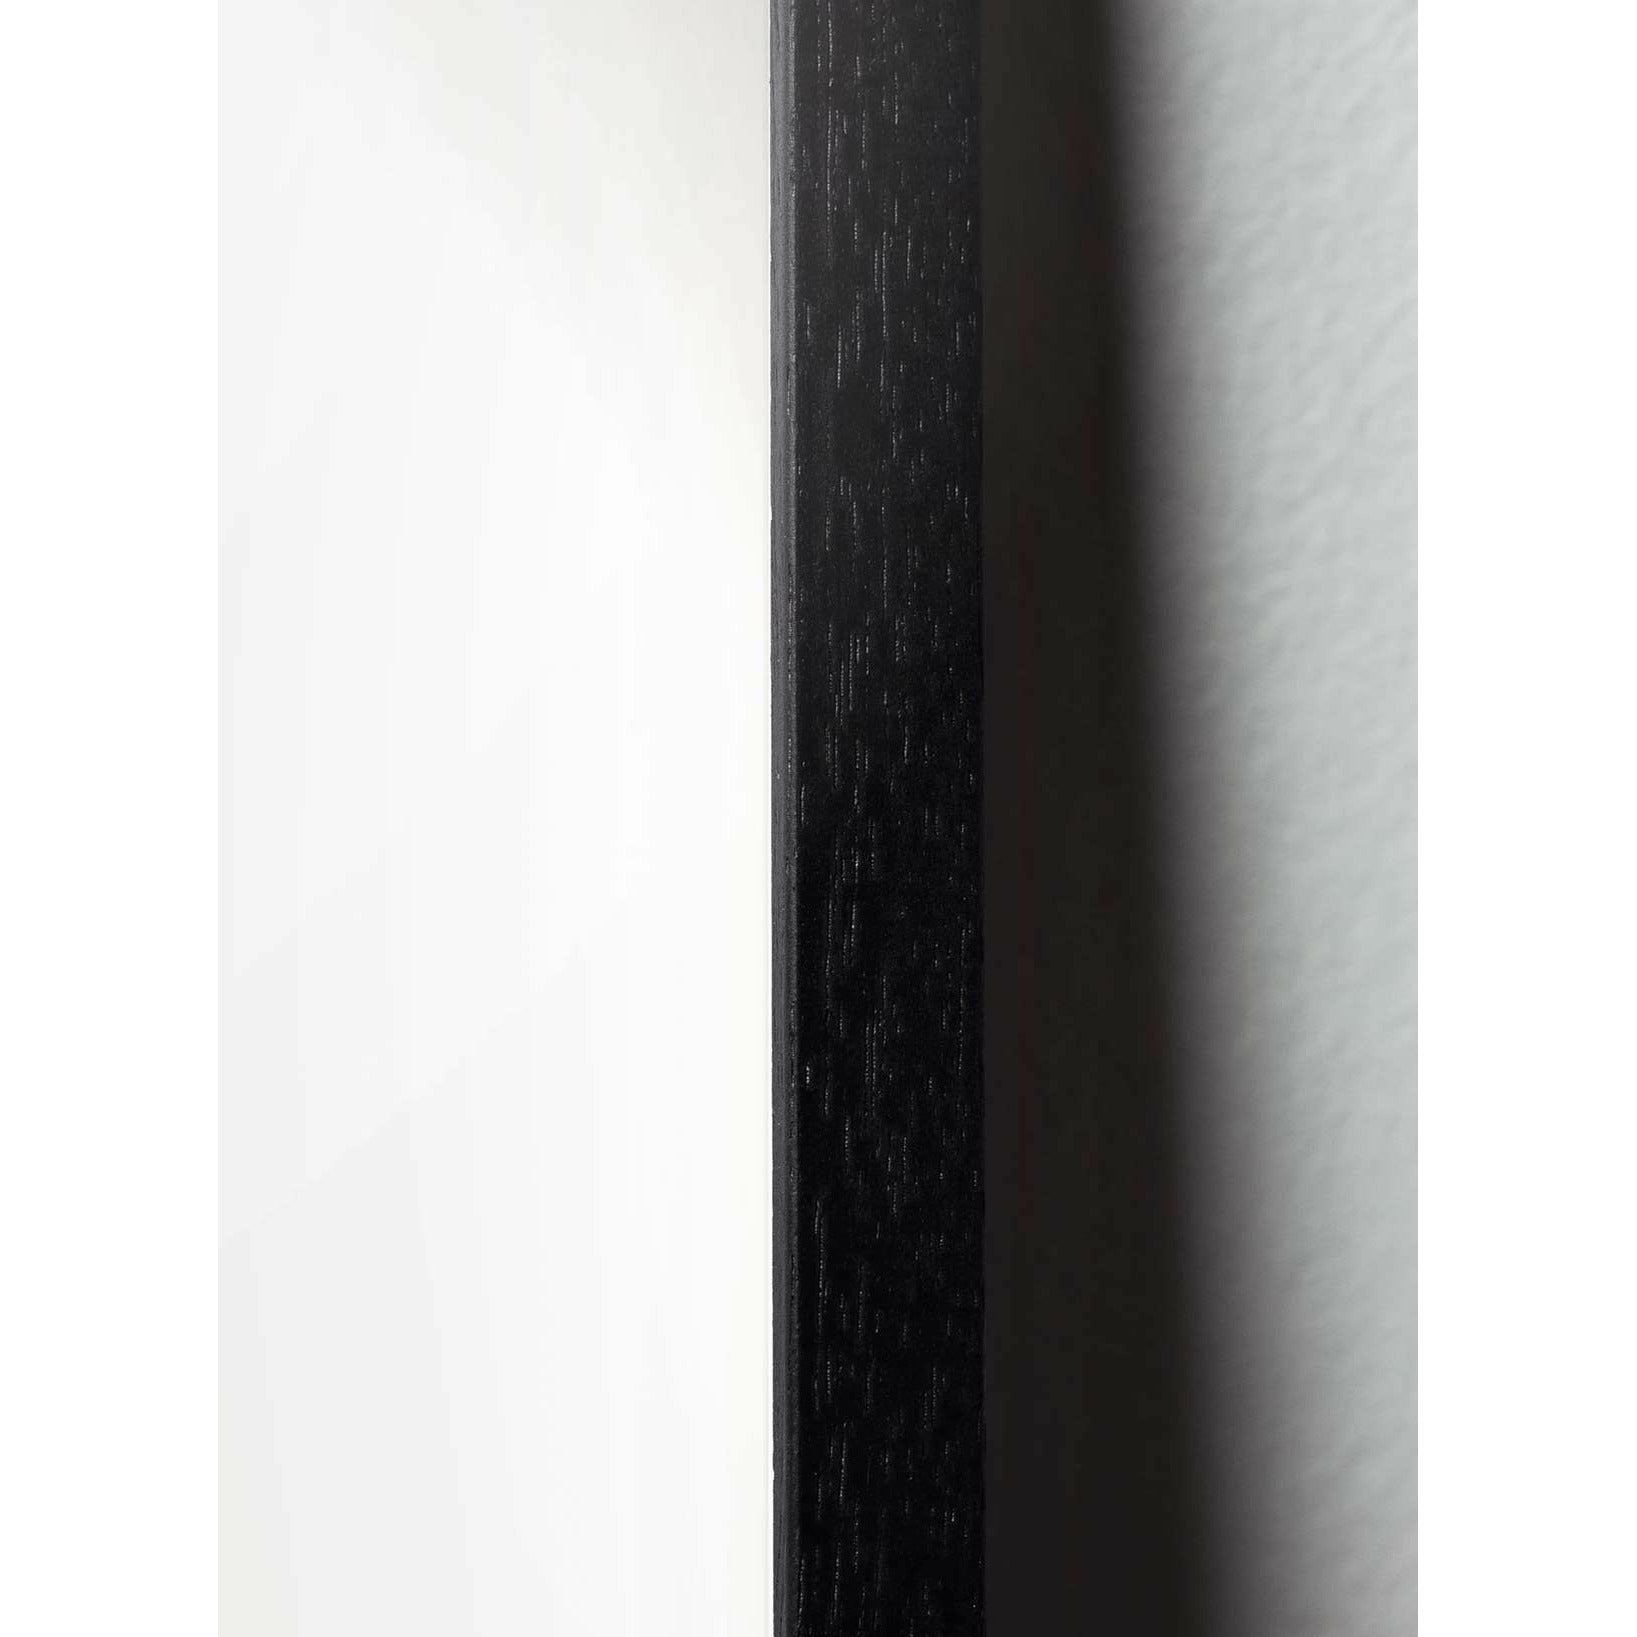 Plakát vejce z mozku, rám vyrobený z černého lakovaného dřeva 30x40 cm, hnědá